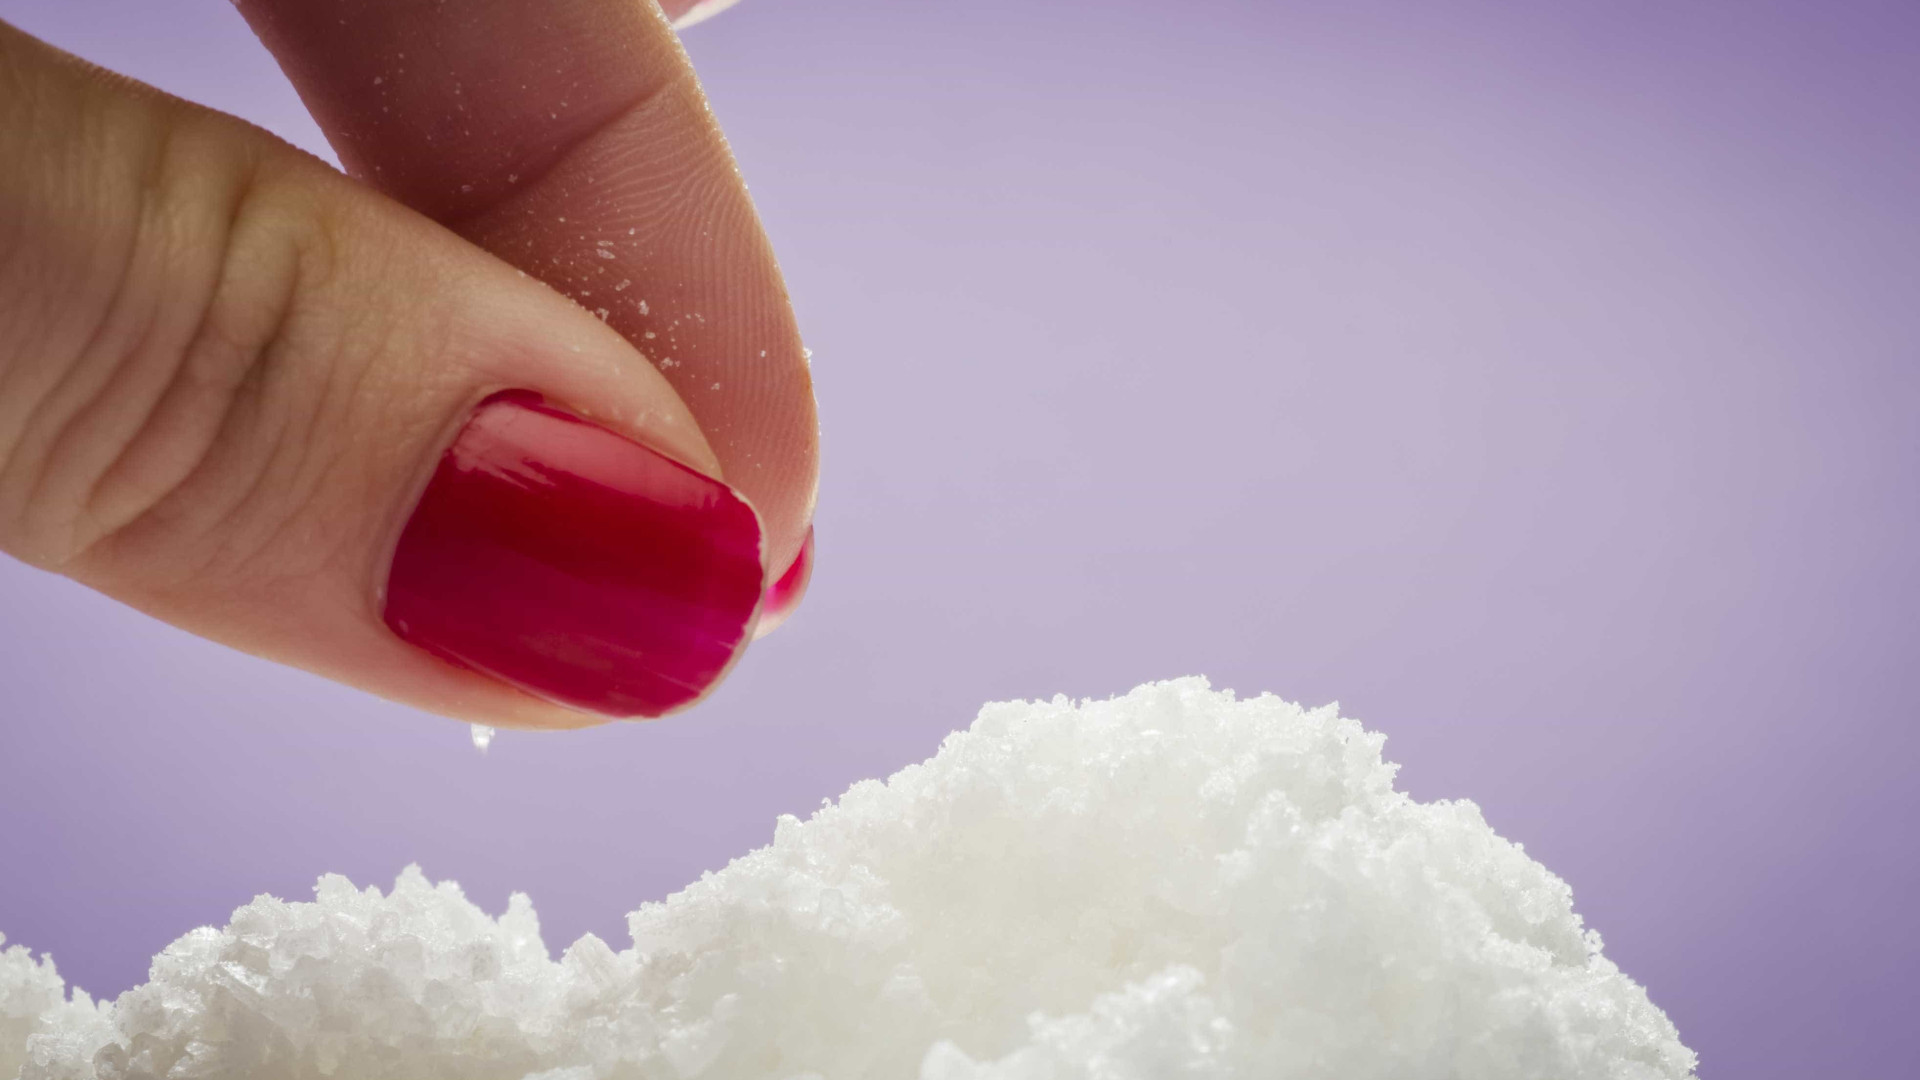 Haloterapia: inalação de sal é usada para tratar rinite e sinusite